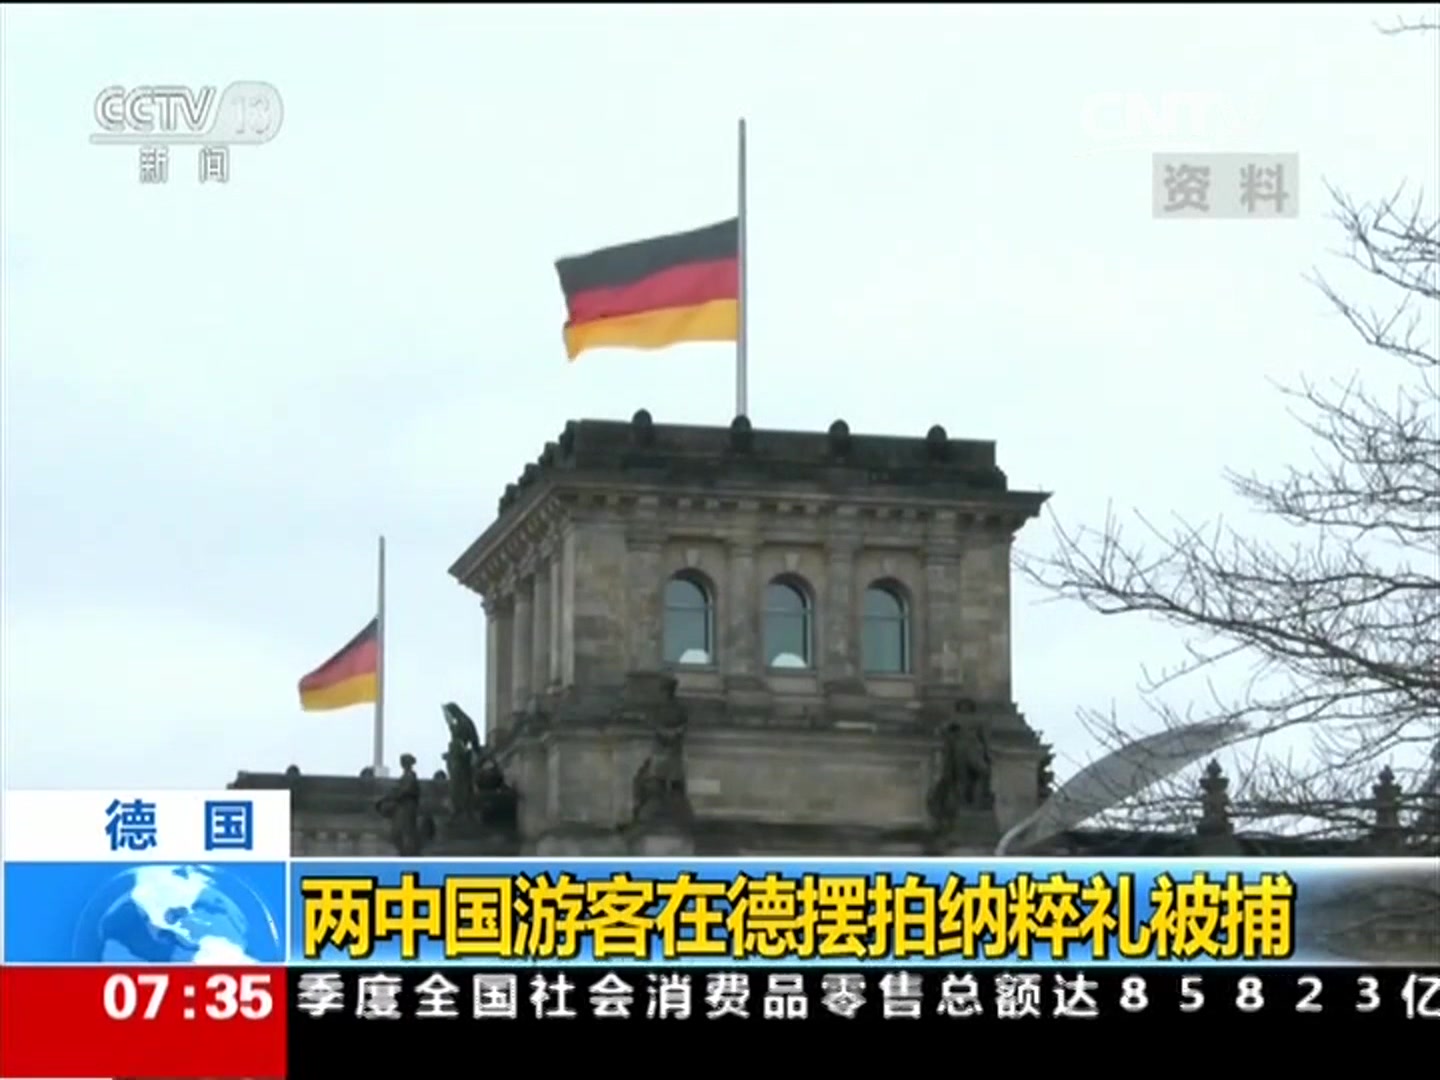 两中国游客在德摆拍纳粹礼被捕：战后德国立法惩处纳粹元素